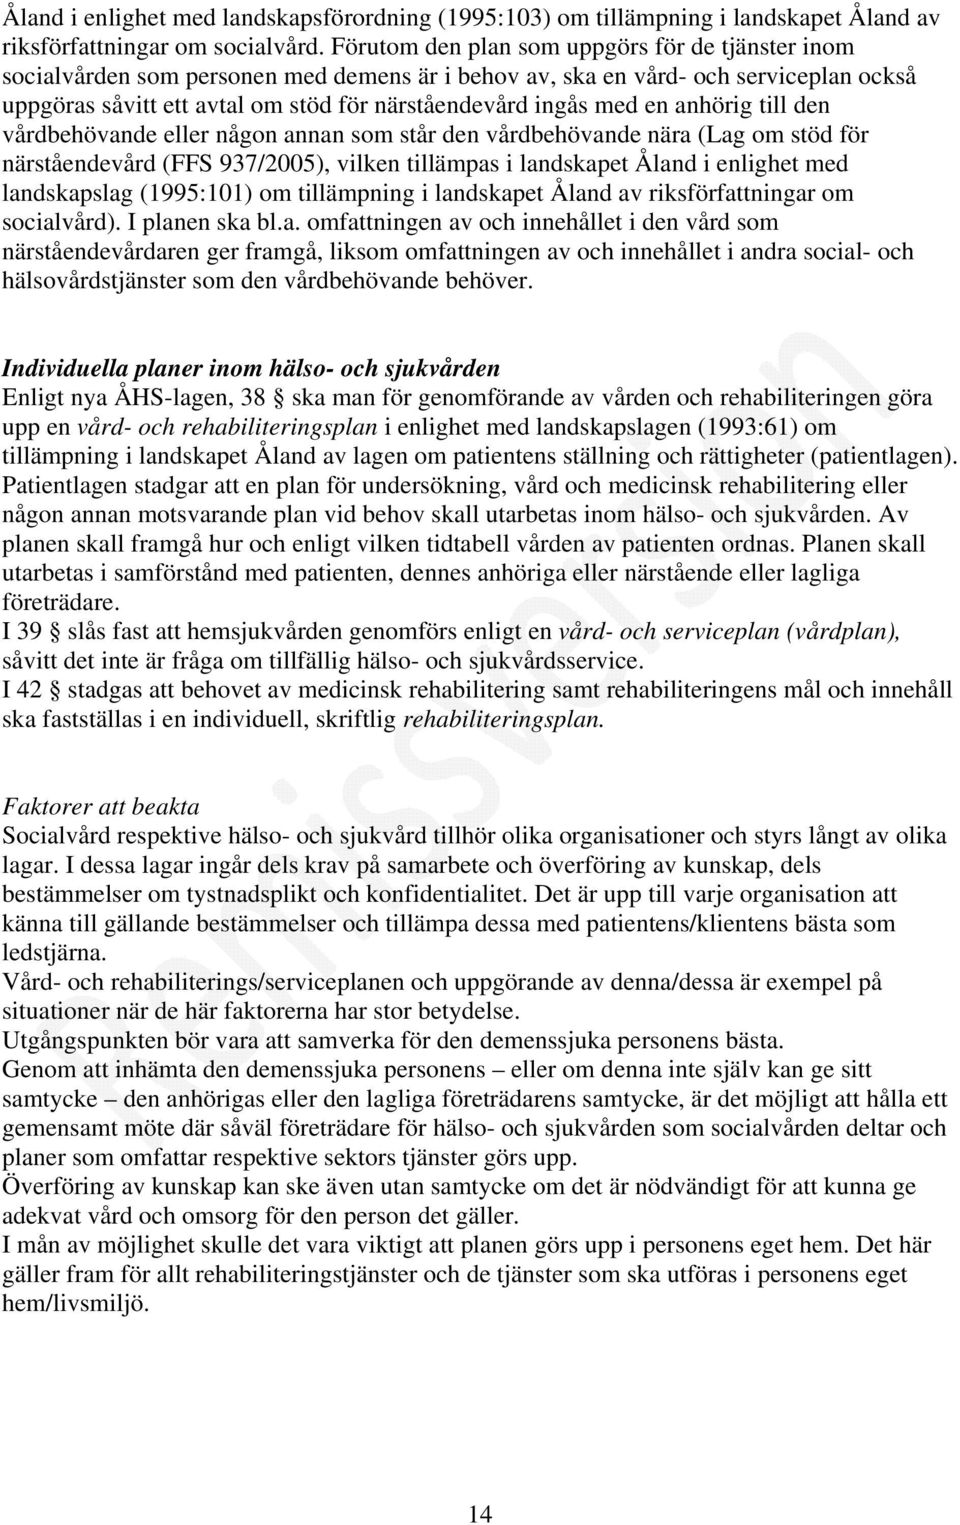 en anhörig till den vårdbehövande eller någon annan som står den vårdbehövande nära (Lag om stöd för närståendevård (FFS 937/2005), vilken tillämpas i landskapet Åland i enlighet med landskapslag